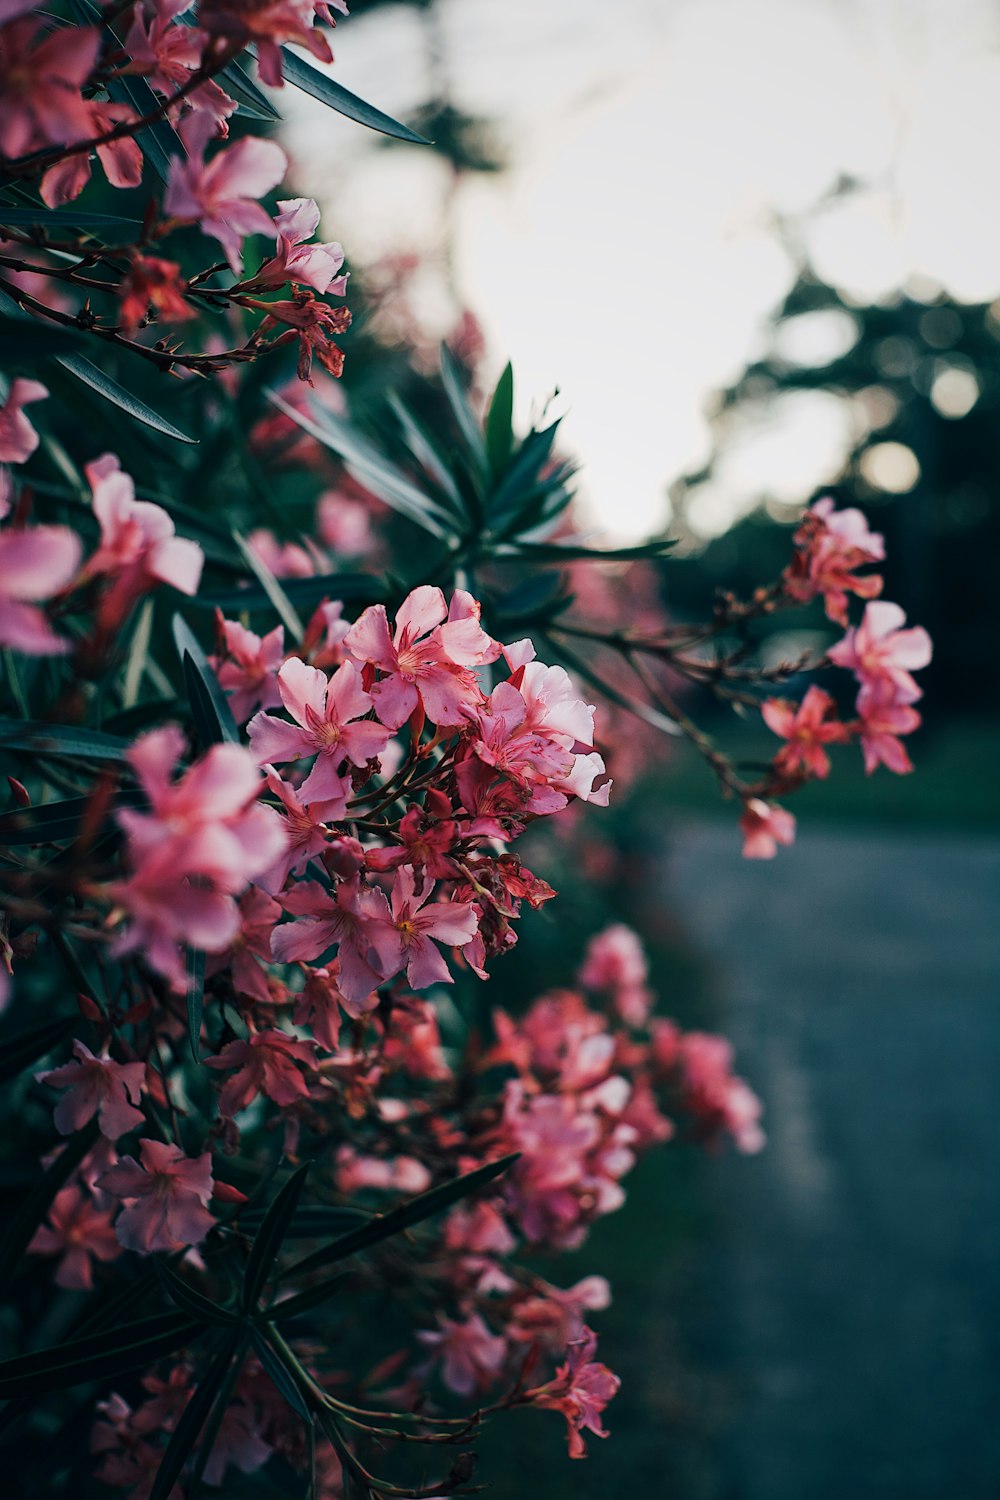 flor de pétalas cor-de-rosa